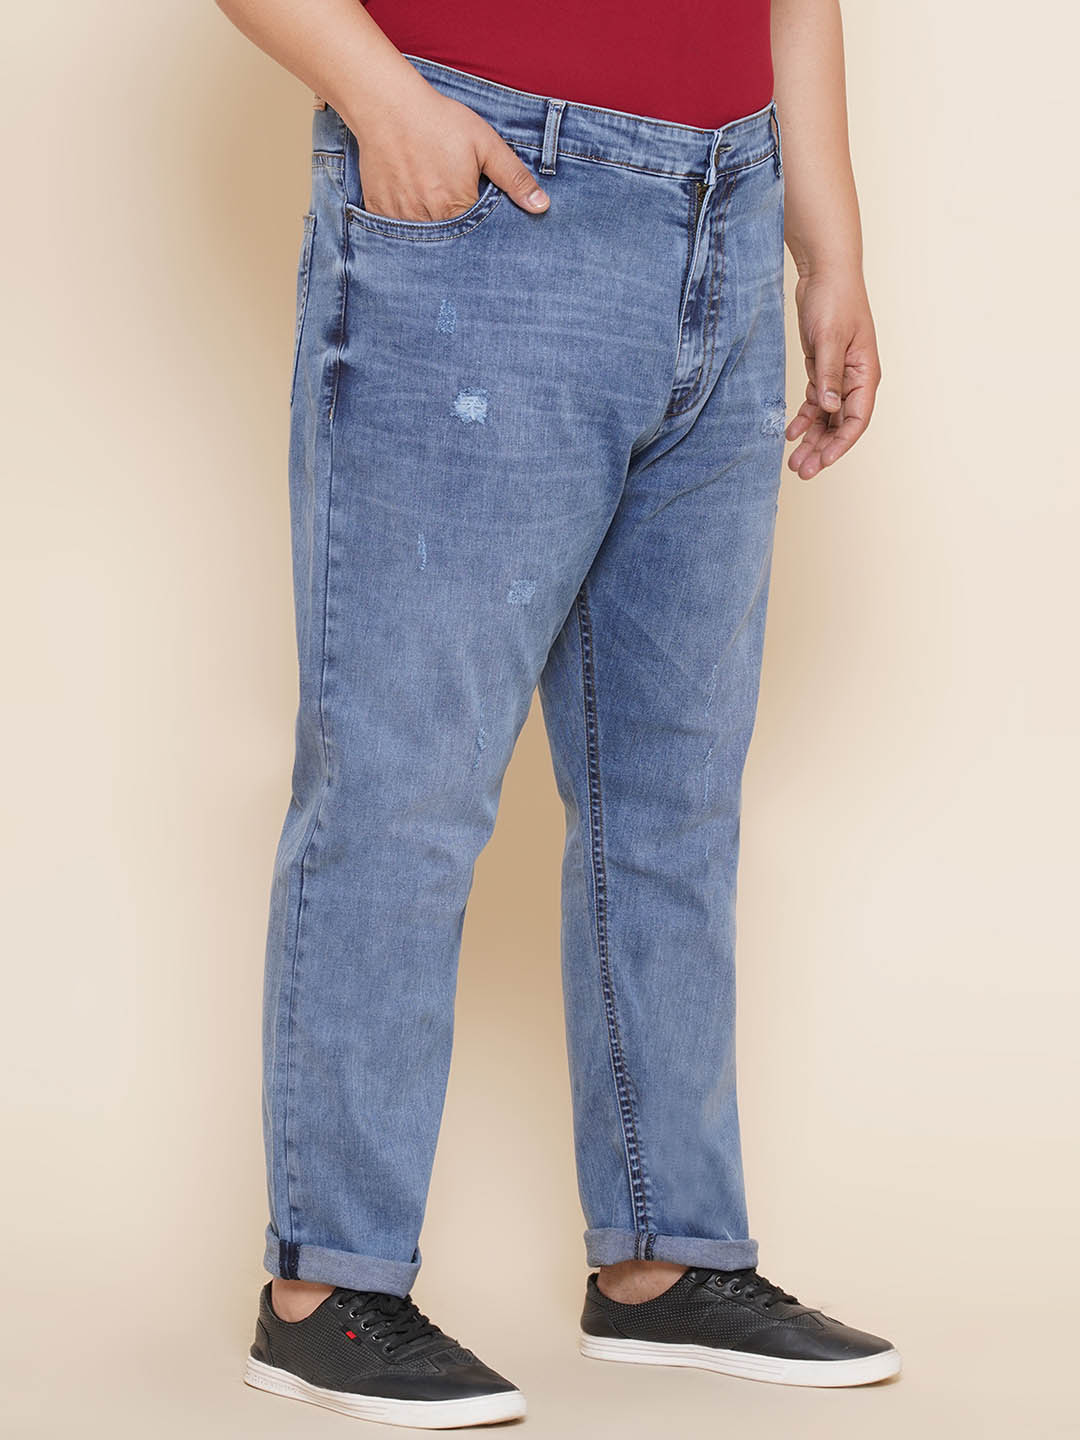 bottomwear/jeans/JPJ12305/jpj12305-3.jpg